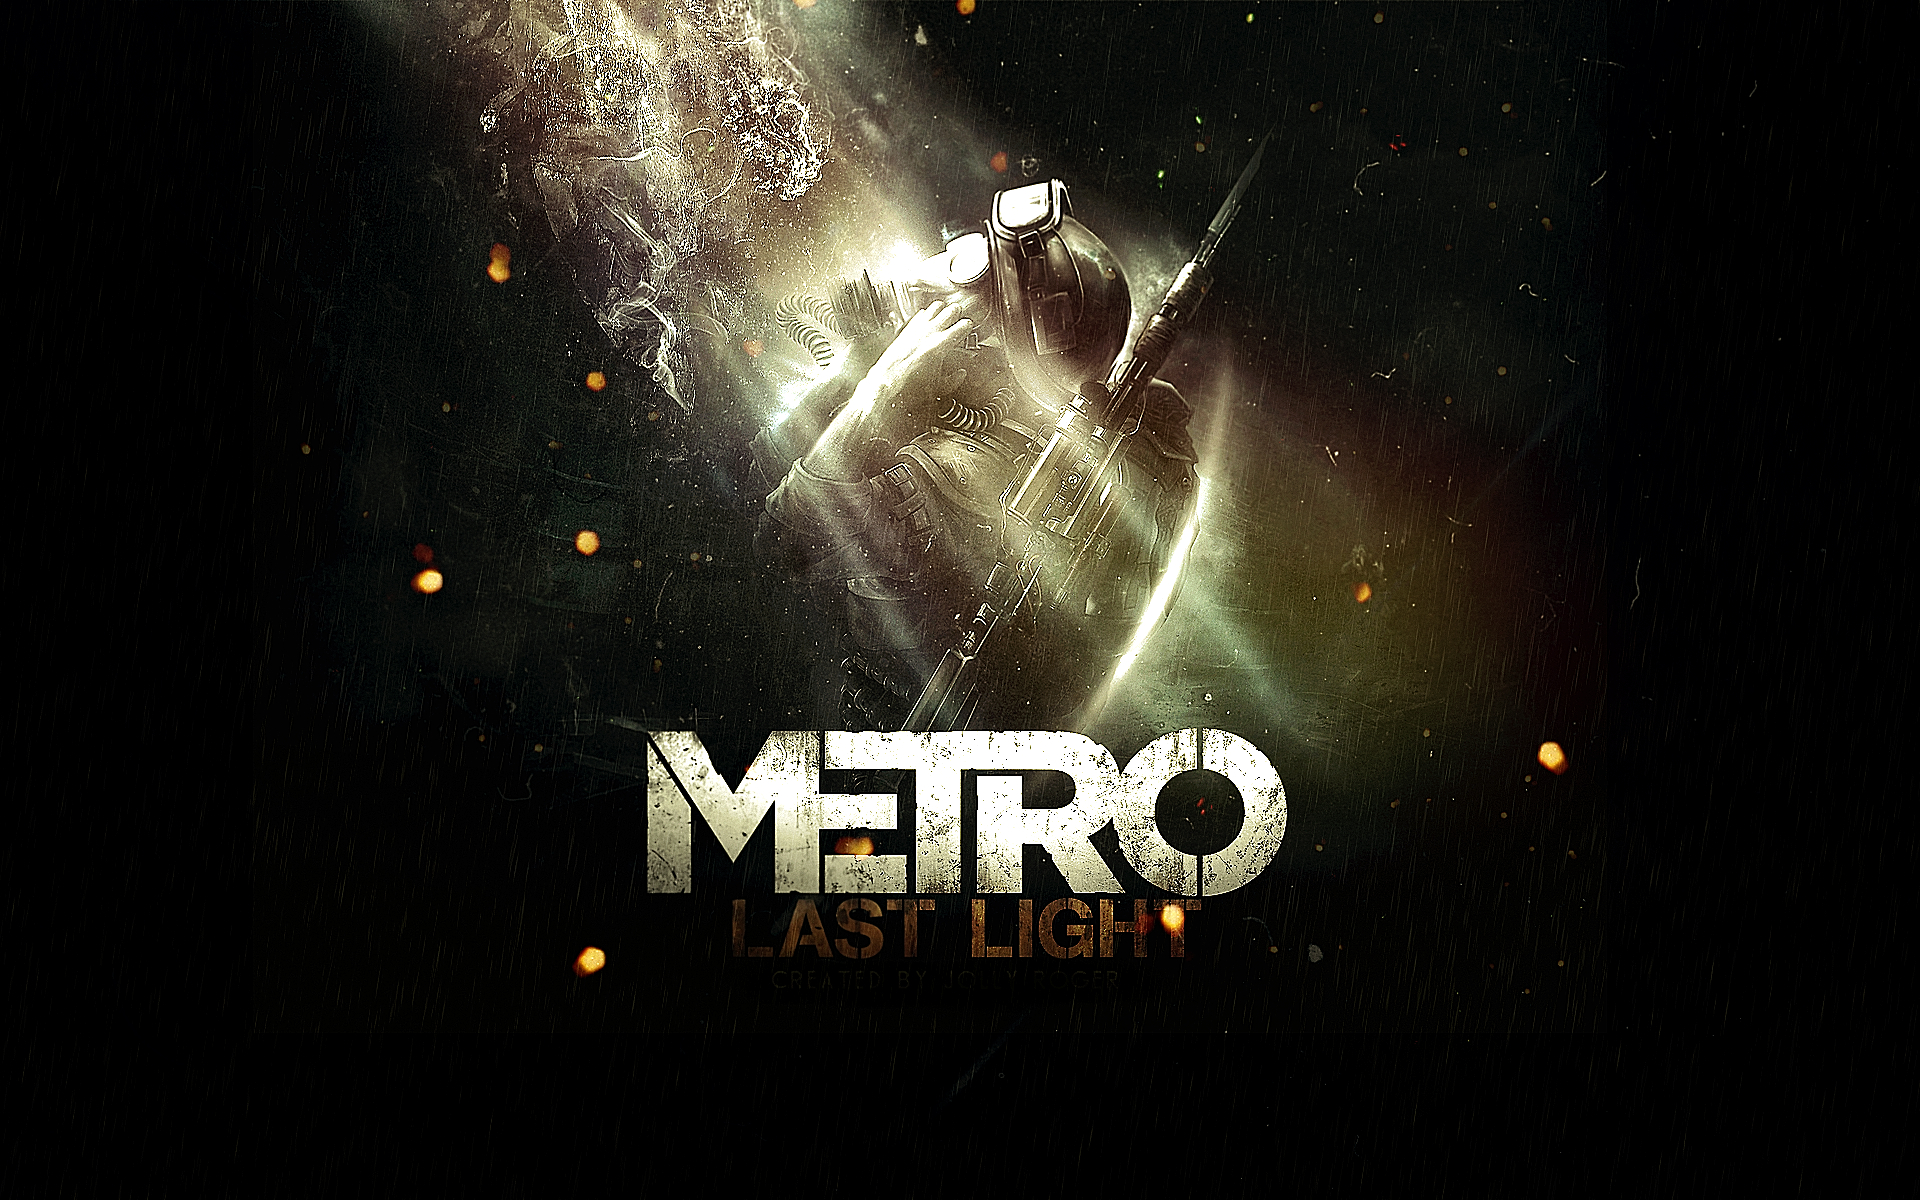 Metro Last Light by Jolly Roger